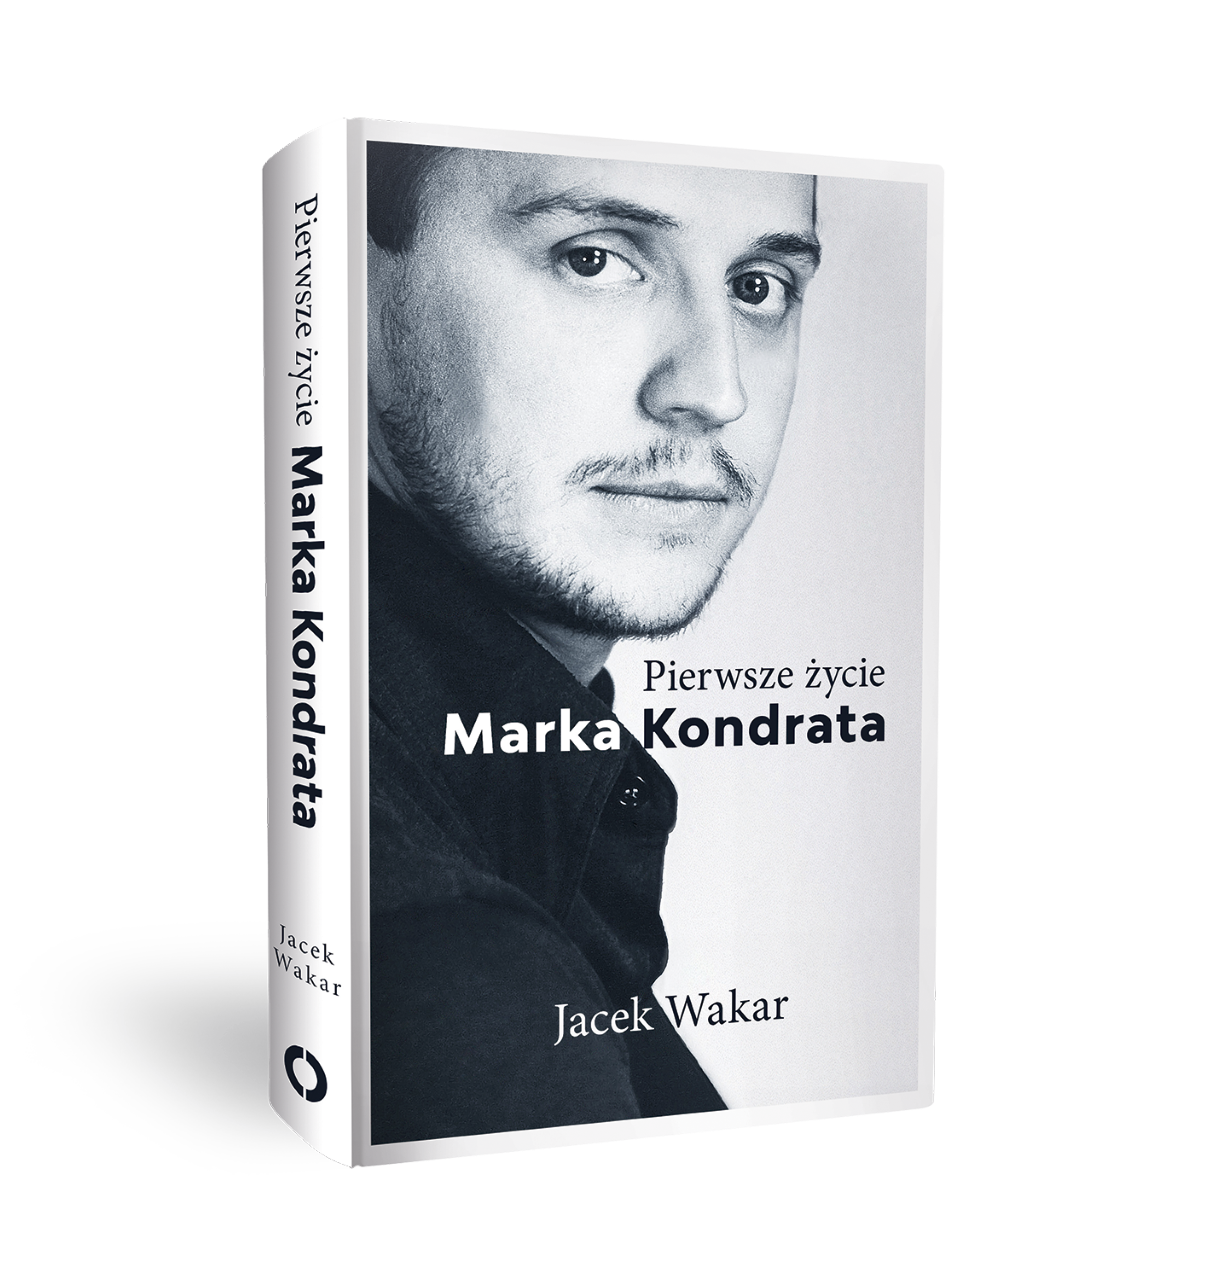 ,,Pierwsze życie Marka Kondrata